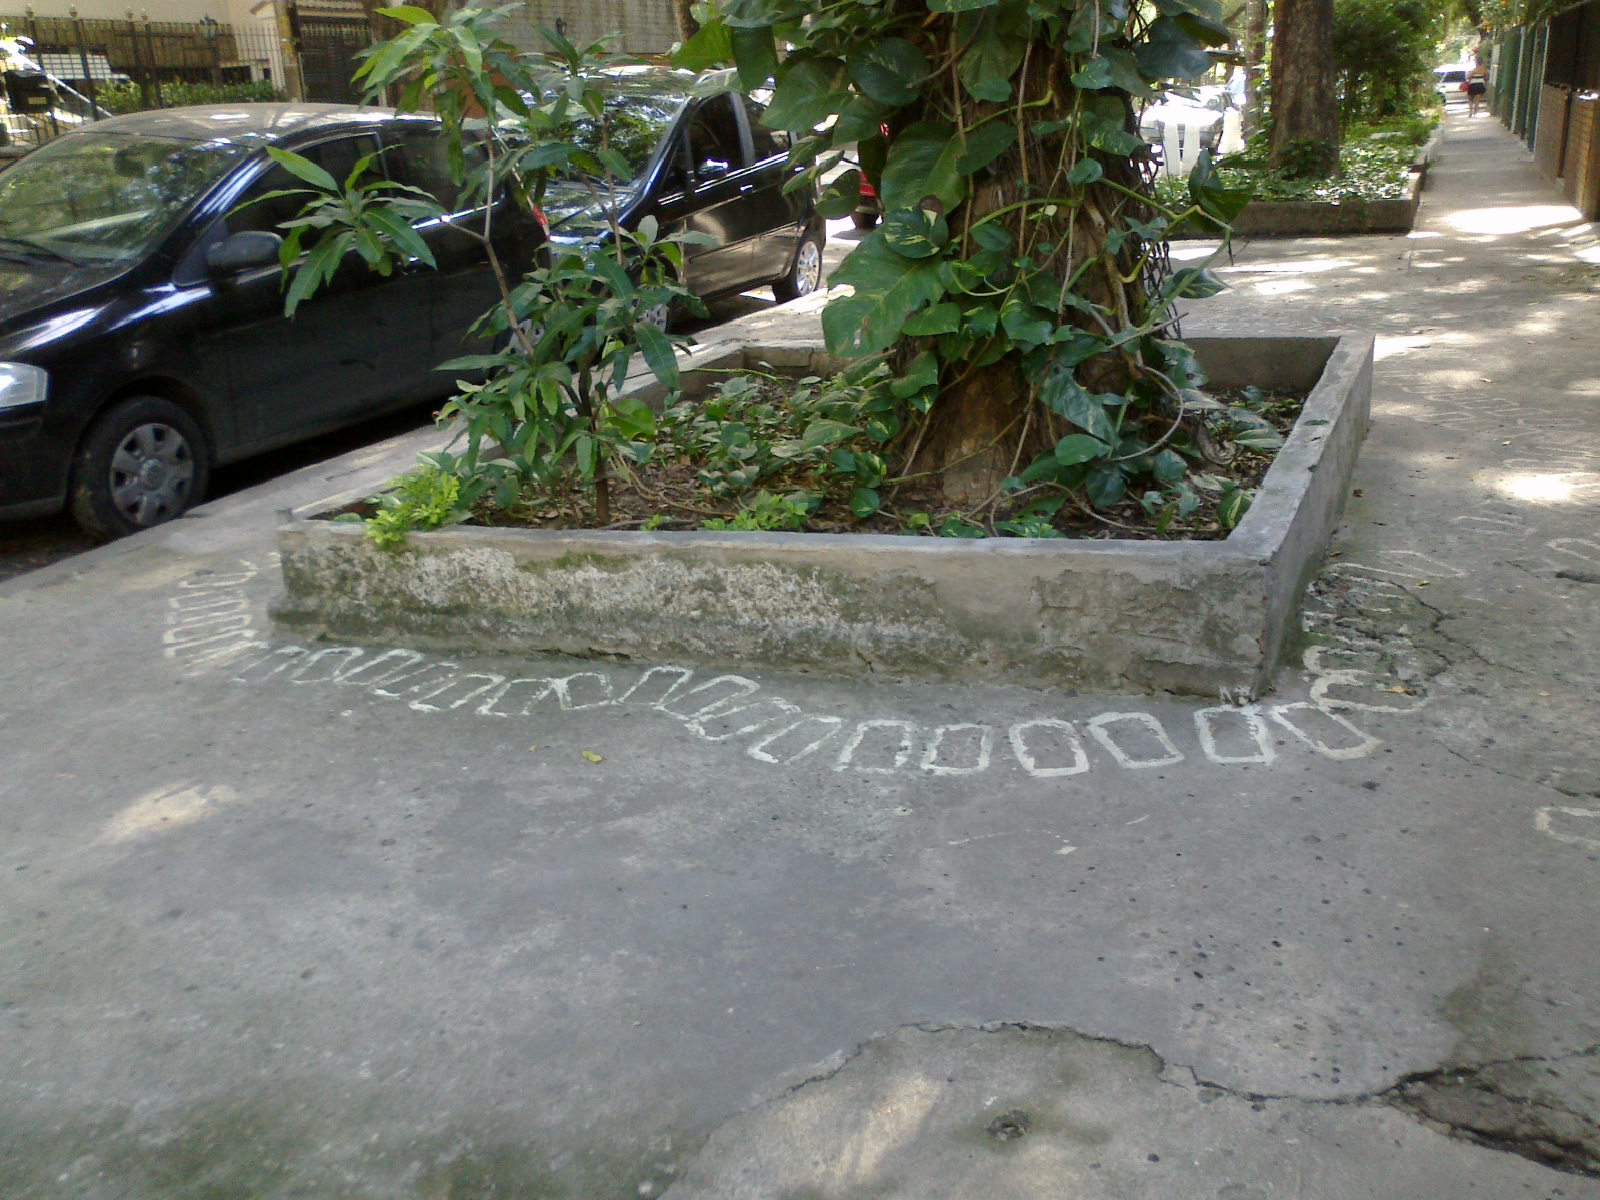  Figura 5 – Rua Grajaú, perto da esquina com a Rua Mearim. Fotografia da autora.